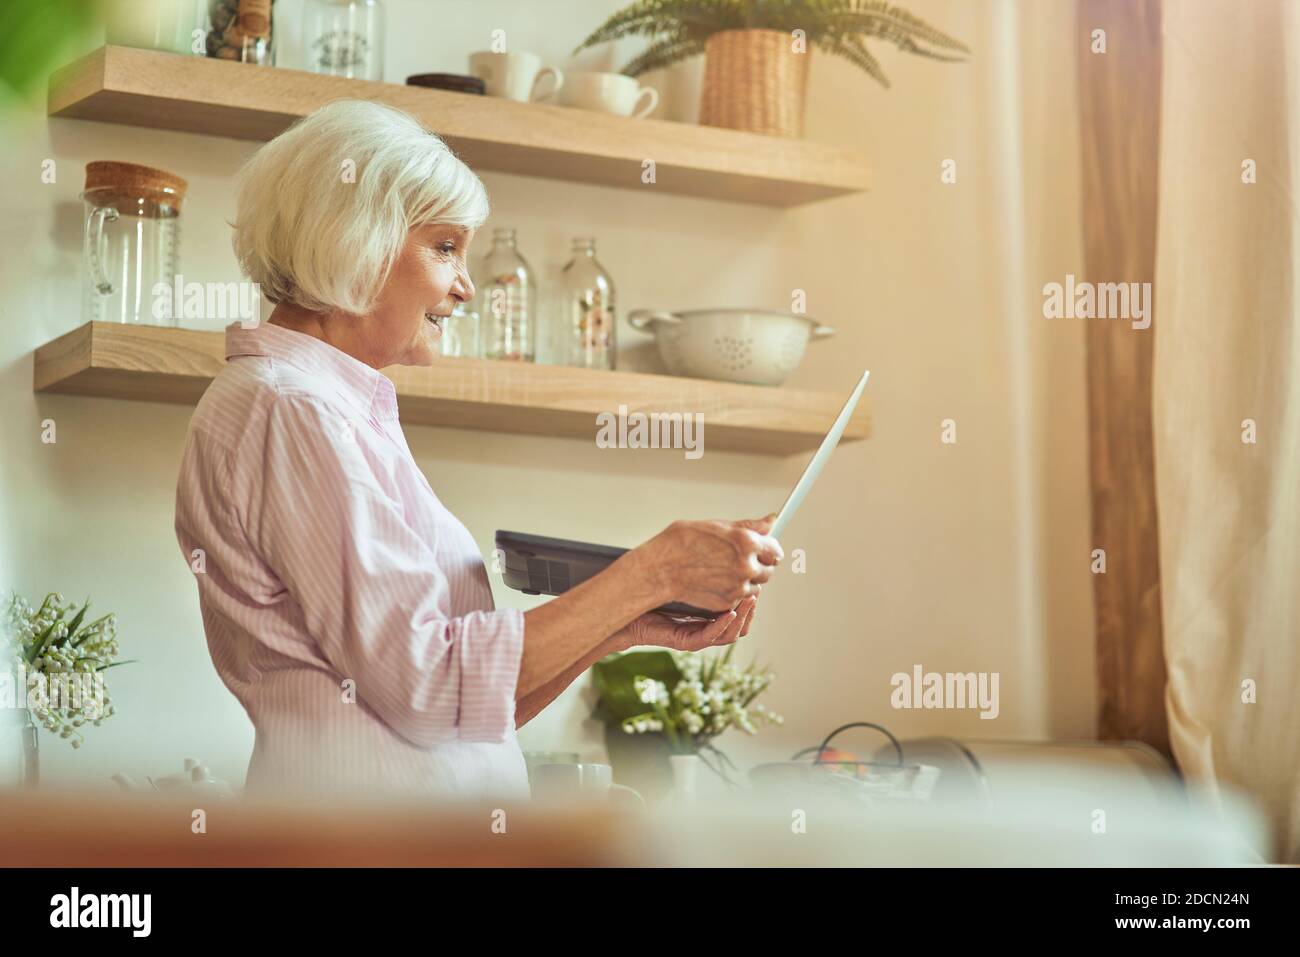 Vue latérale d'une femme âgée debout et tenant un ordinateur portable tout en regardant l'écran de la cuisine. Concept de style de vie domestique Banque D'Images